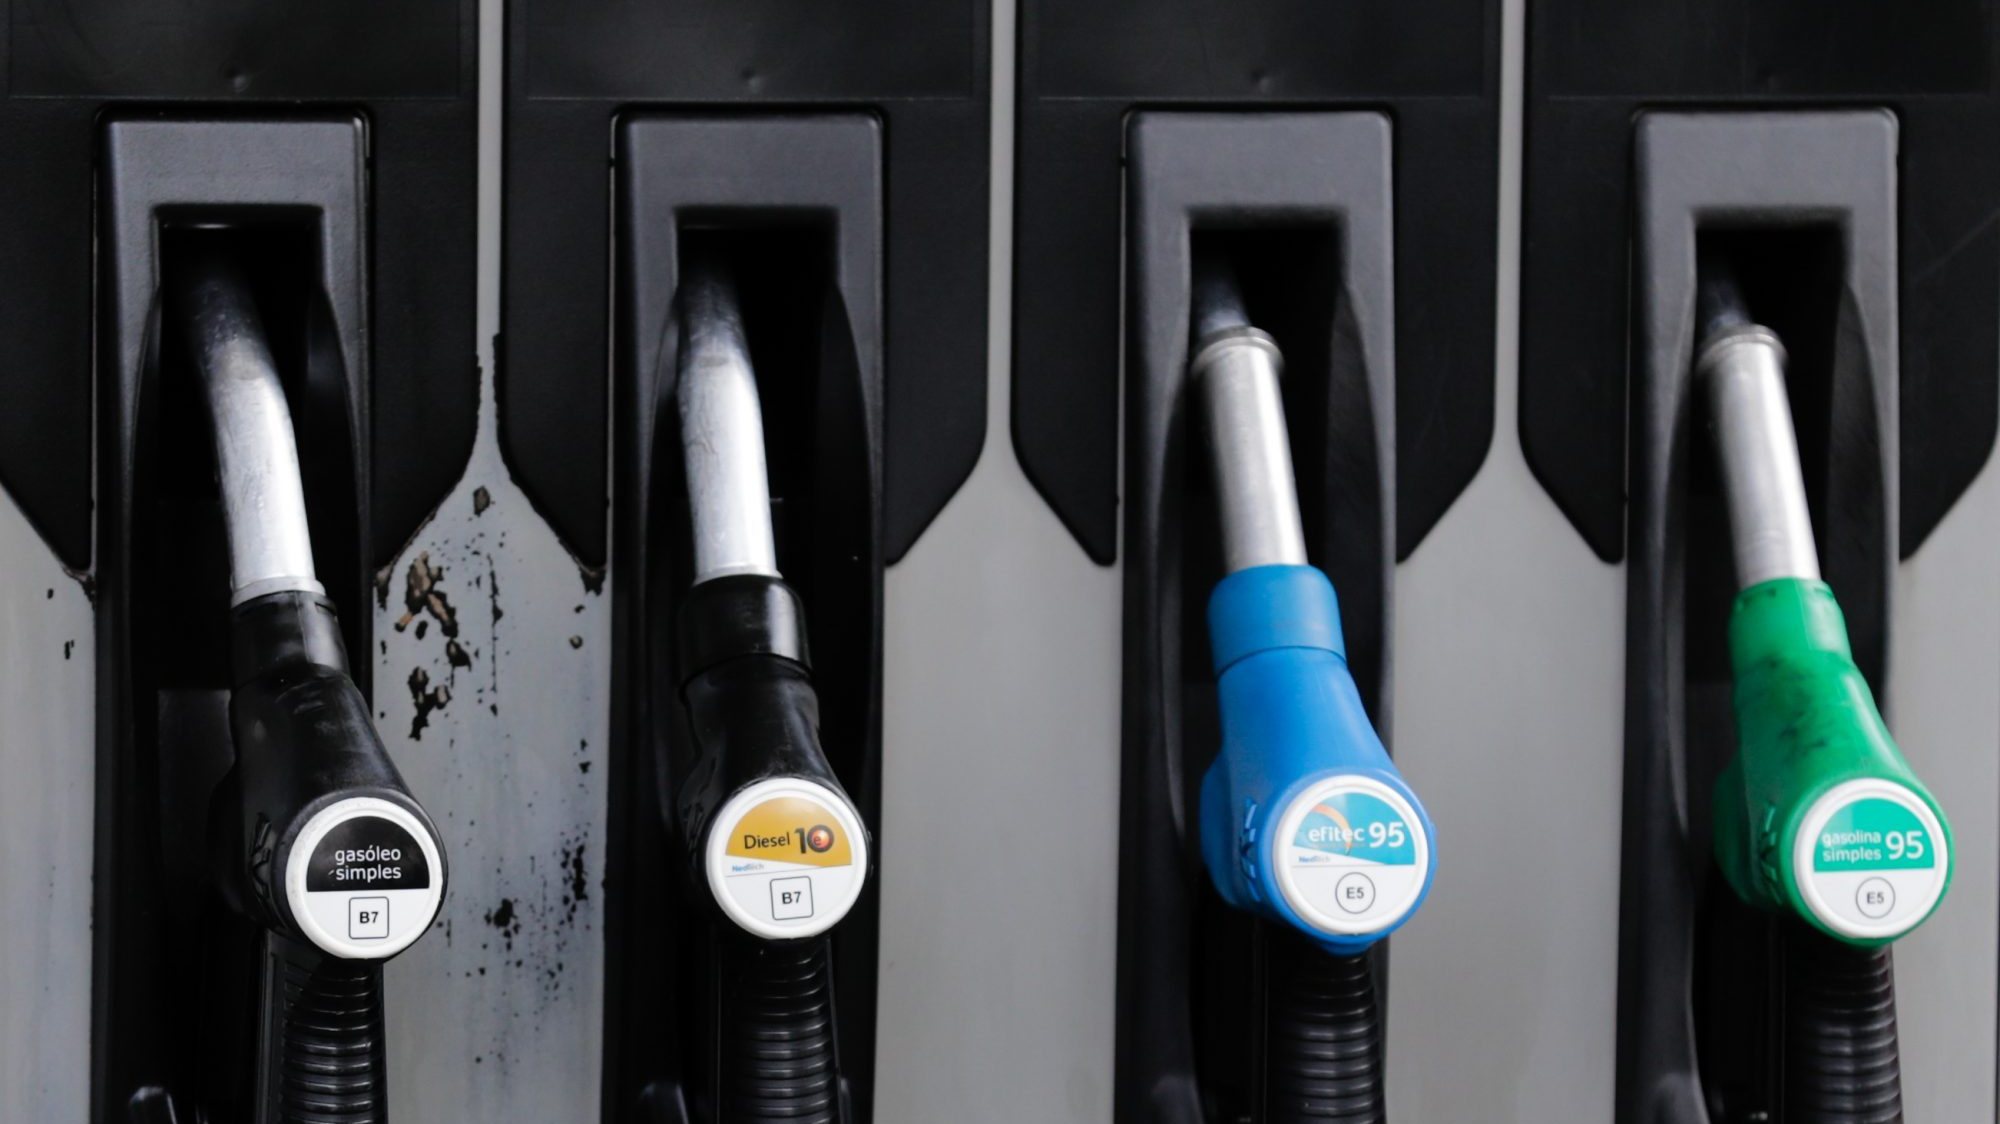 Em comparação com a semana passada, o preço eficiente aumentou 0,9% para a gasolina e 0,6% para o gasóleo